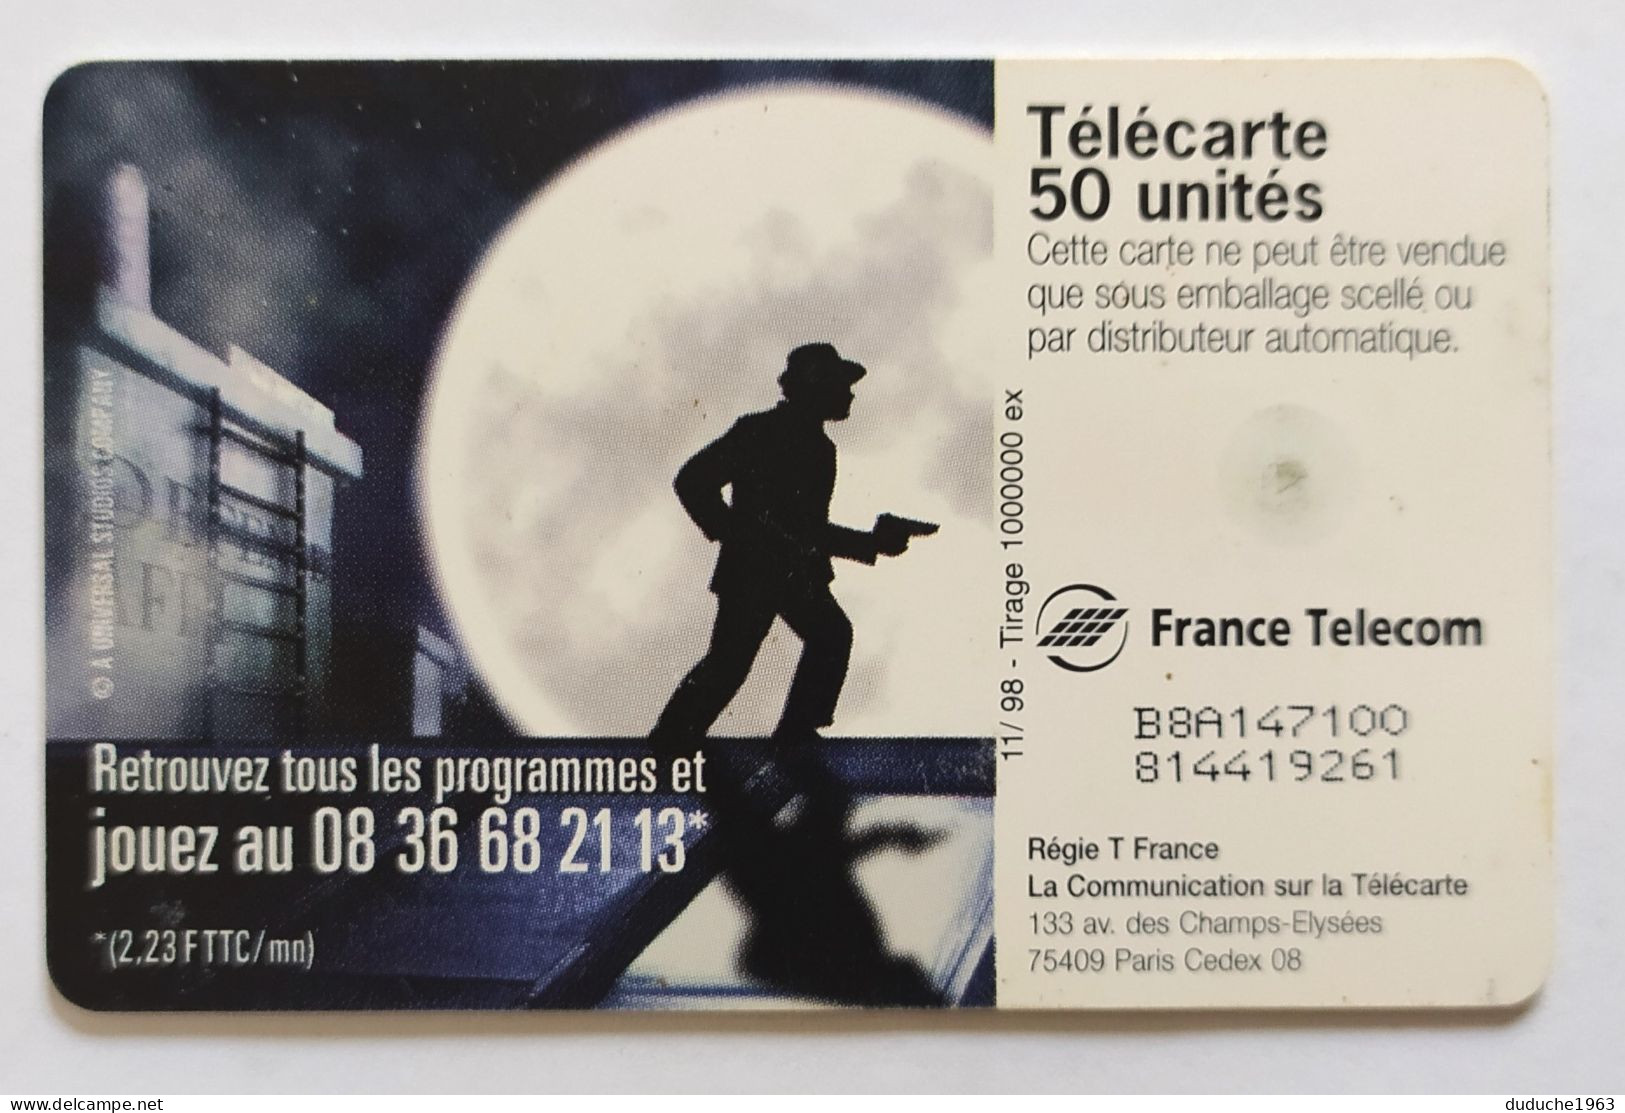 Télécarte France - CANAL SATELLITE 13eme Rue - Unclassified